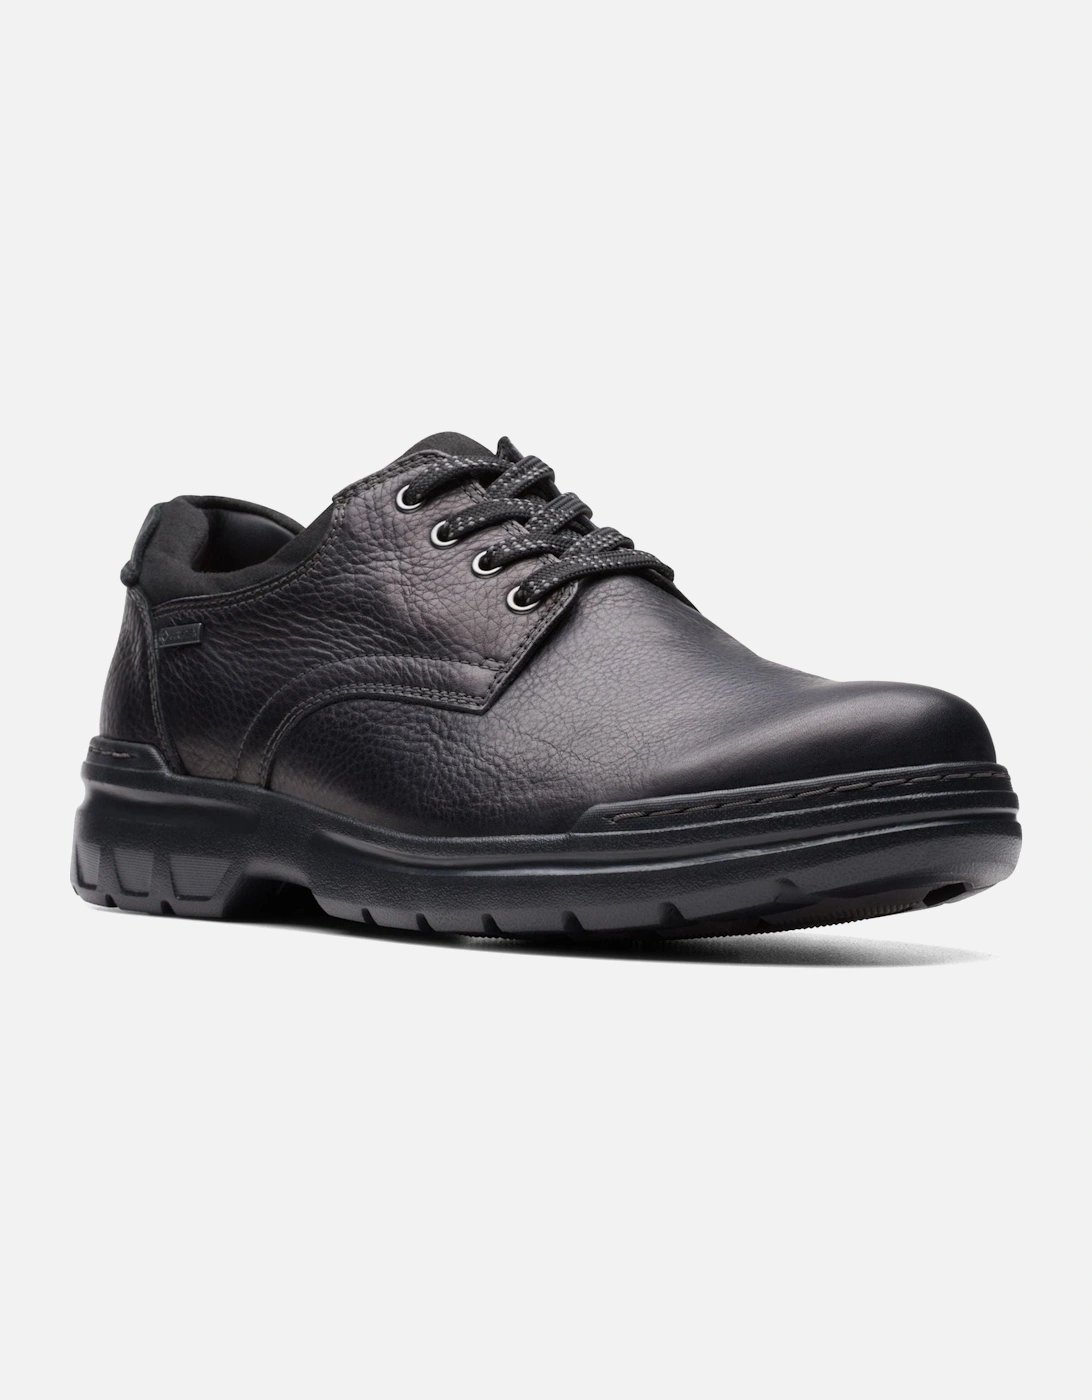 Rockie WalkGTX waterproof shoe in black leather, 2 of 1